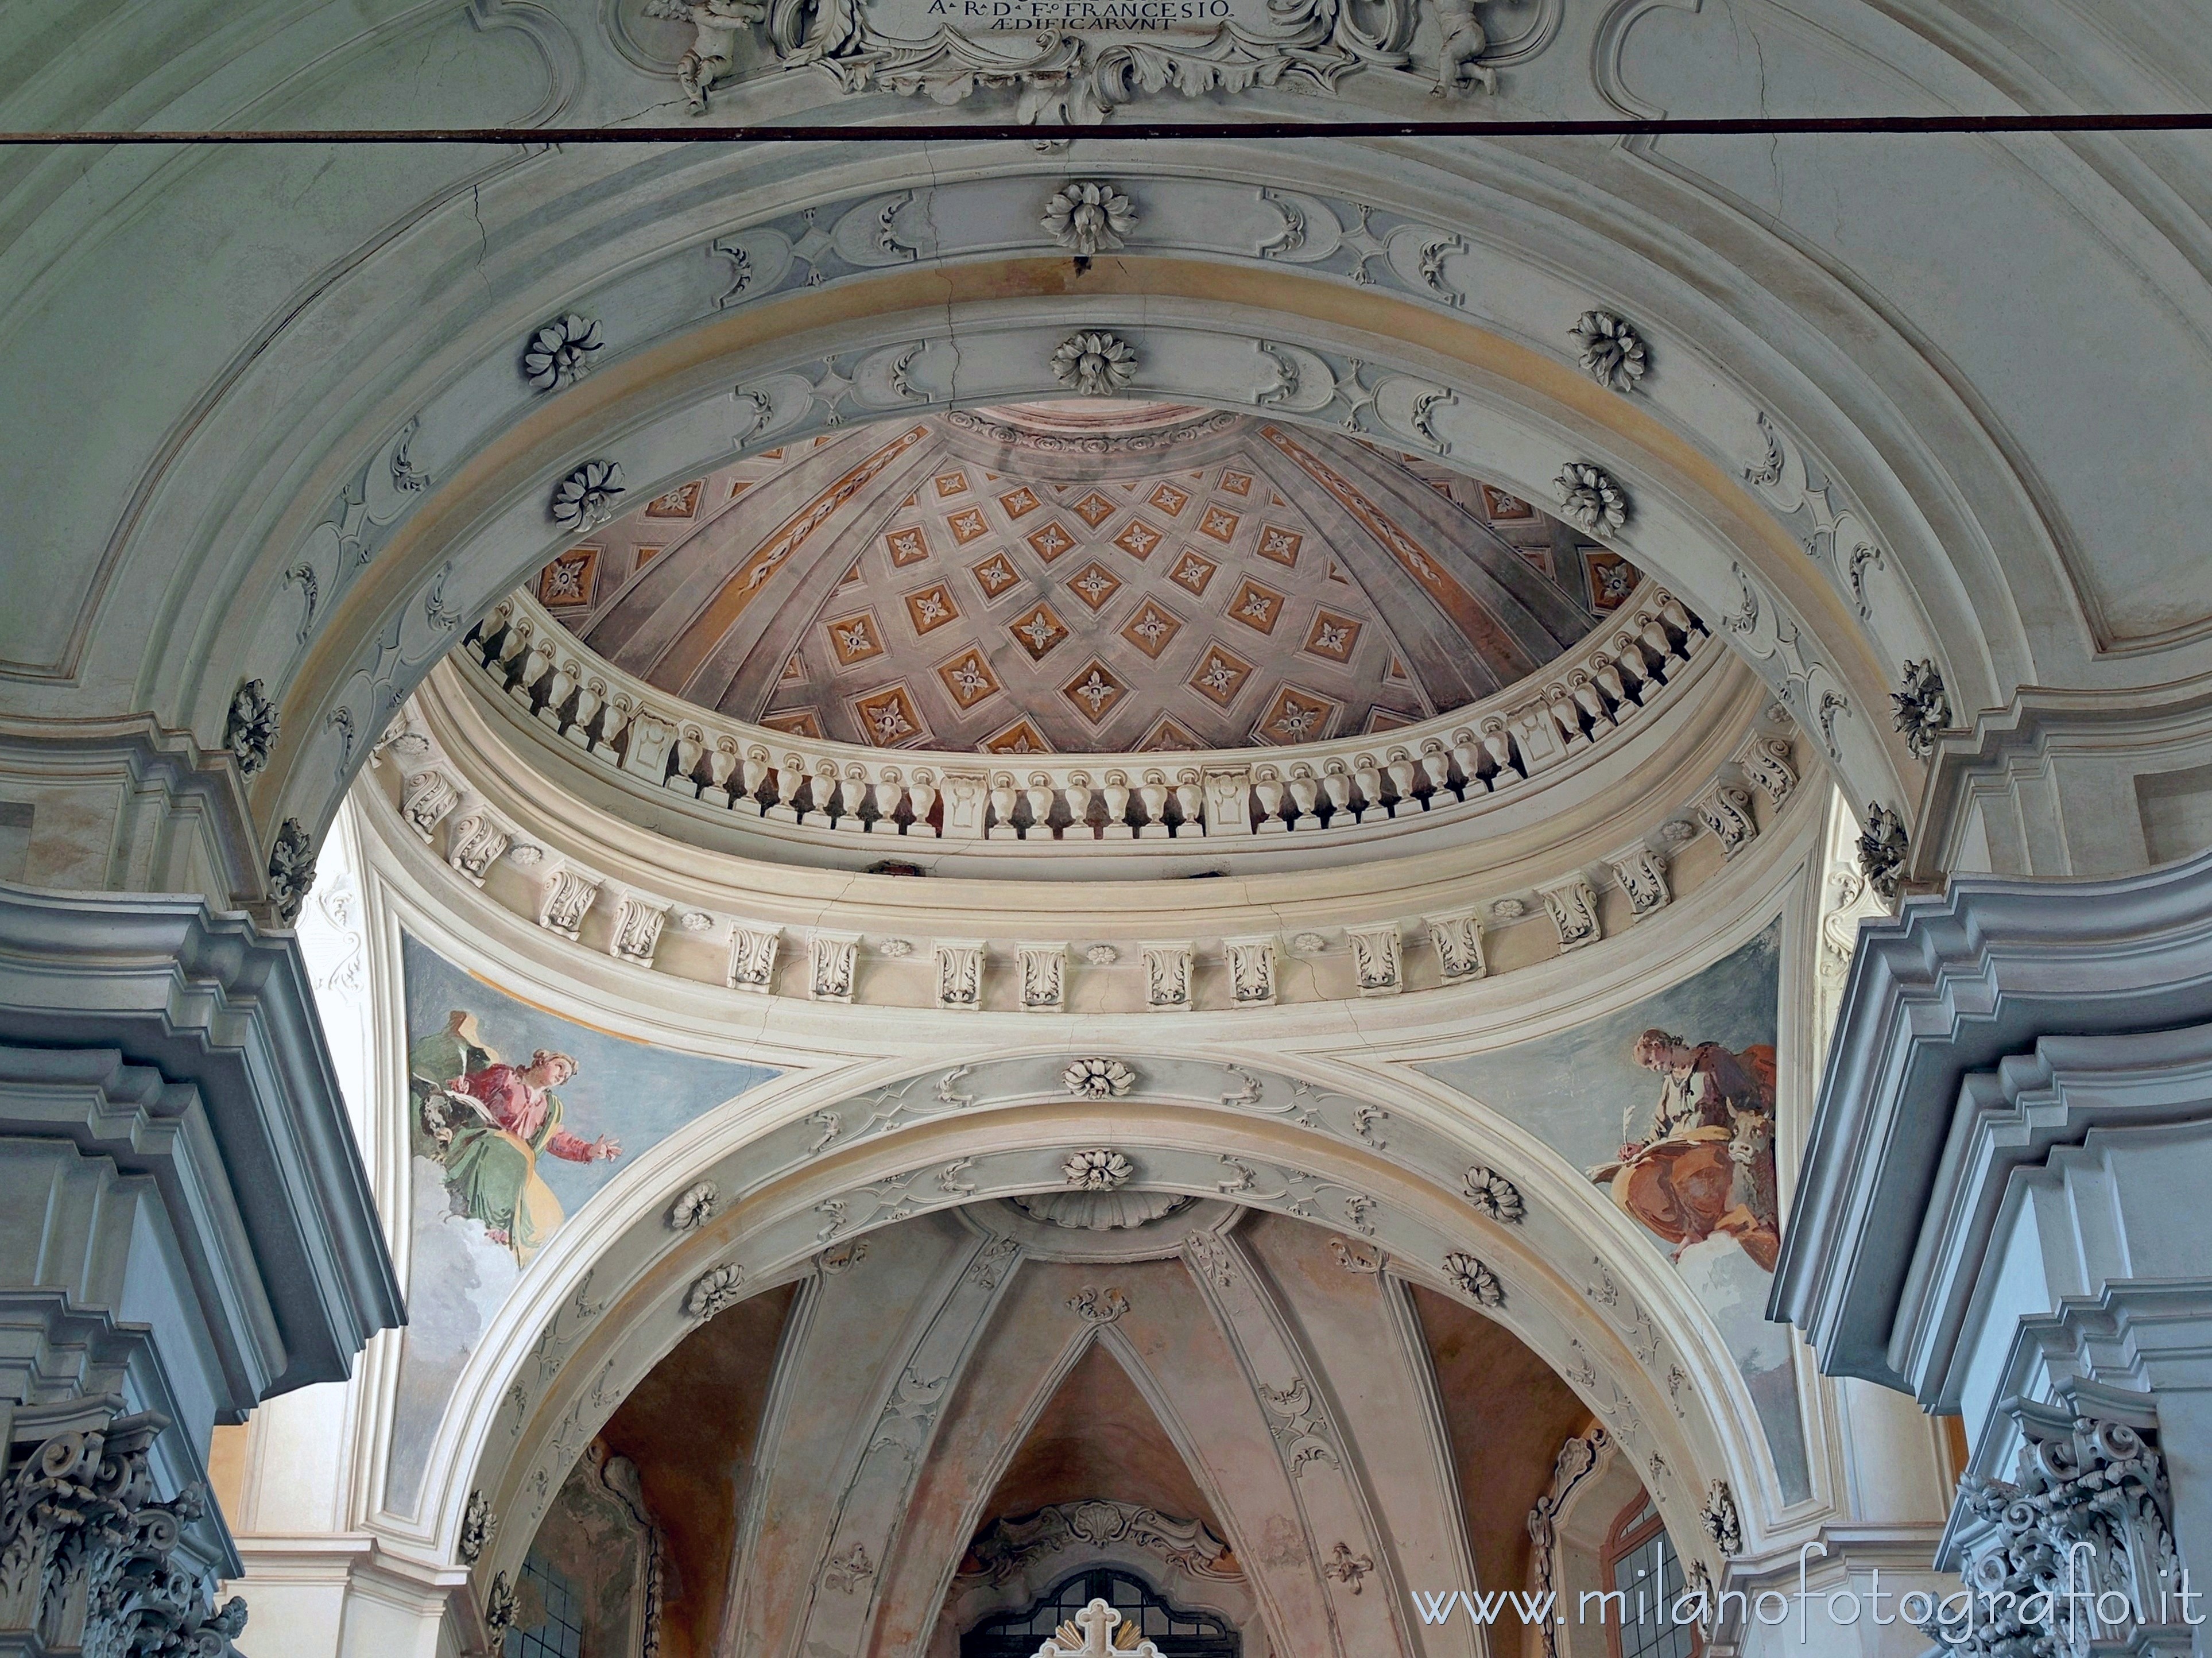 Campiglia Cervo (Biella, Italy): Ceiling of the Sanctuary of San Giovanni di Andorno - Campiglia Cervo (Biella, Italy)